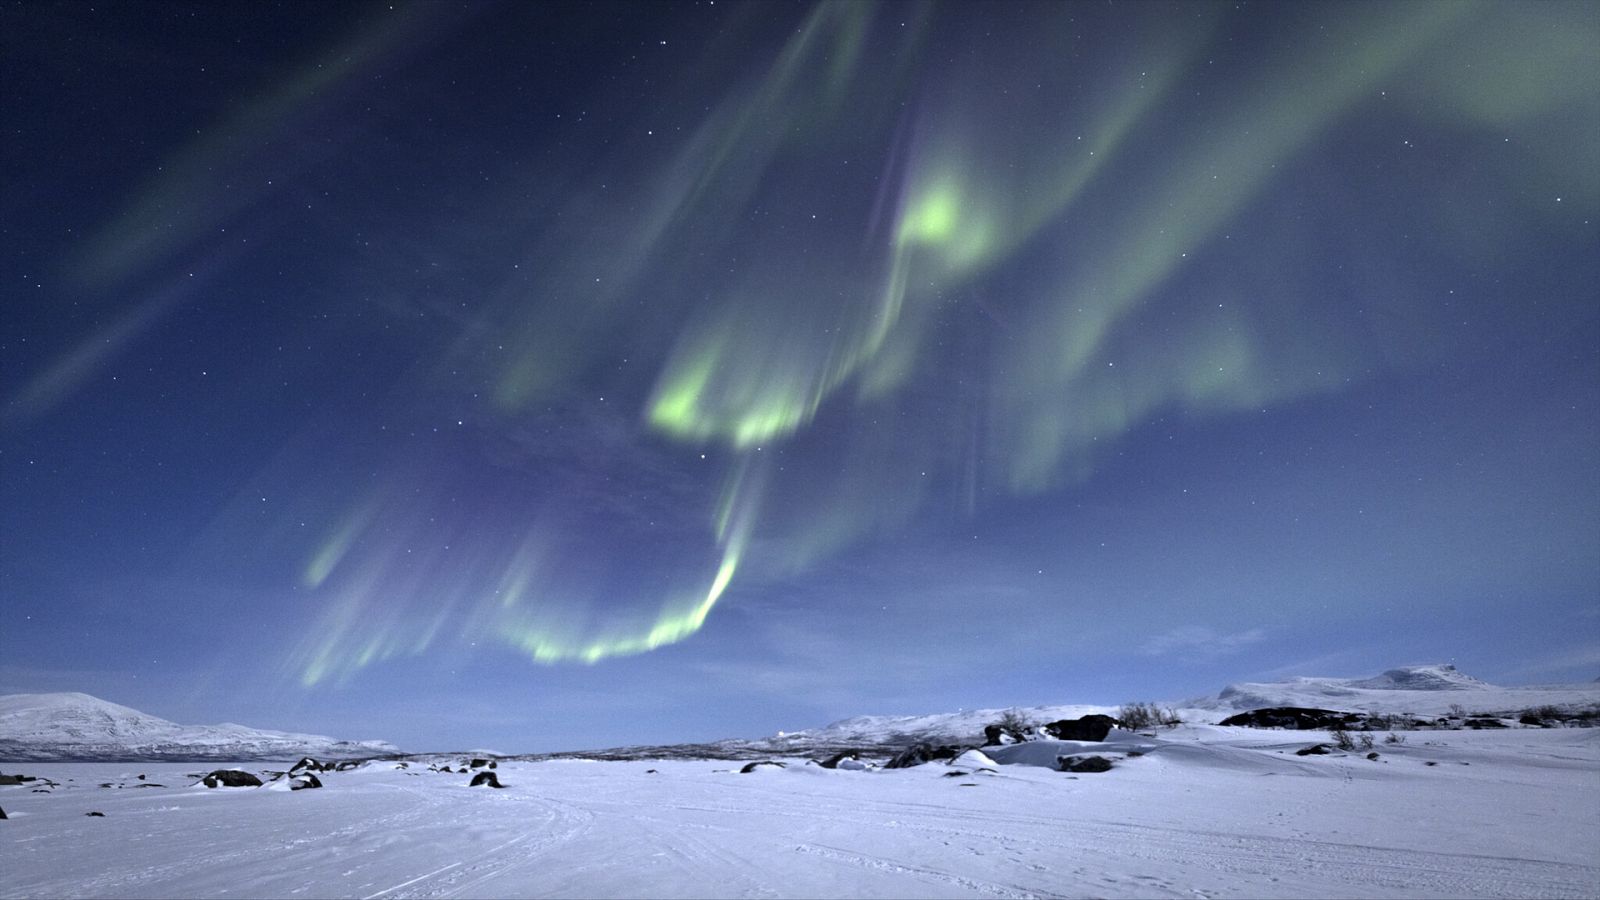 Un planeta espectacular - Episodio 4: Auroras boreales